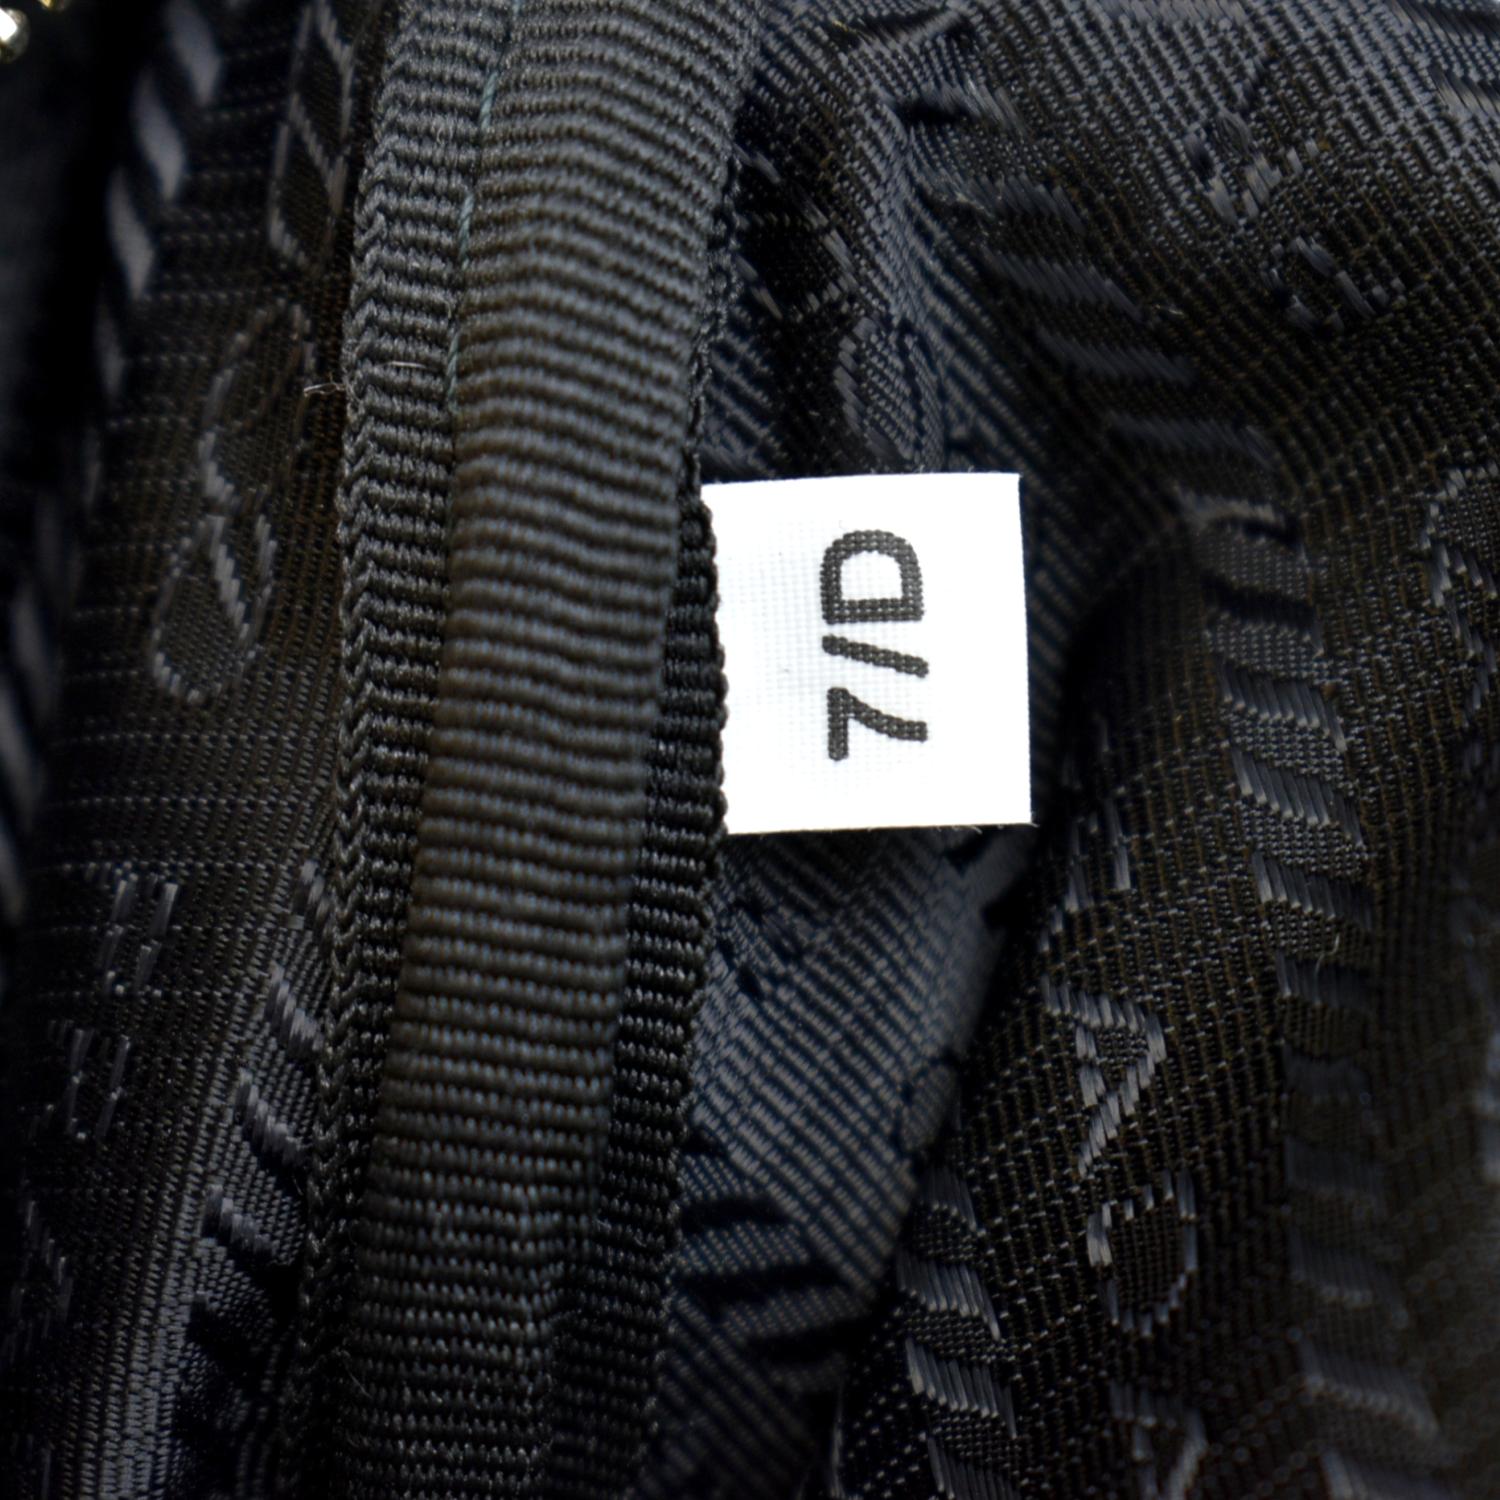 Prada Triangle Leather Shoulder Bag Black